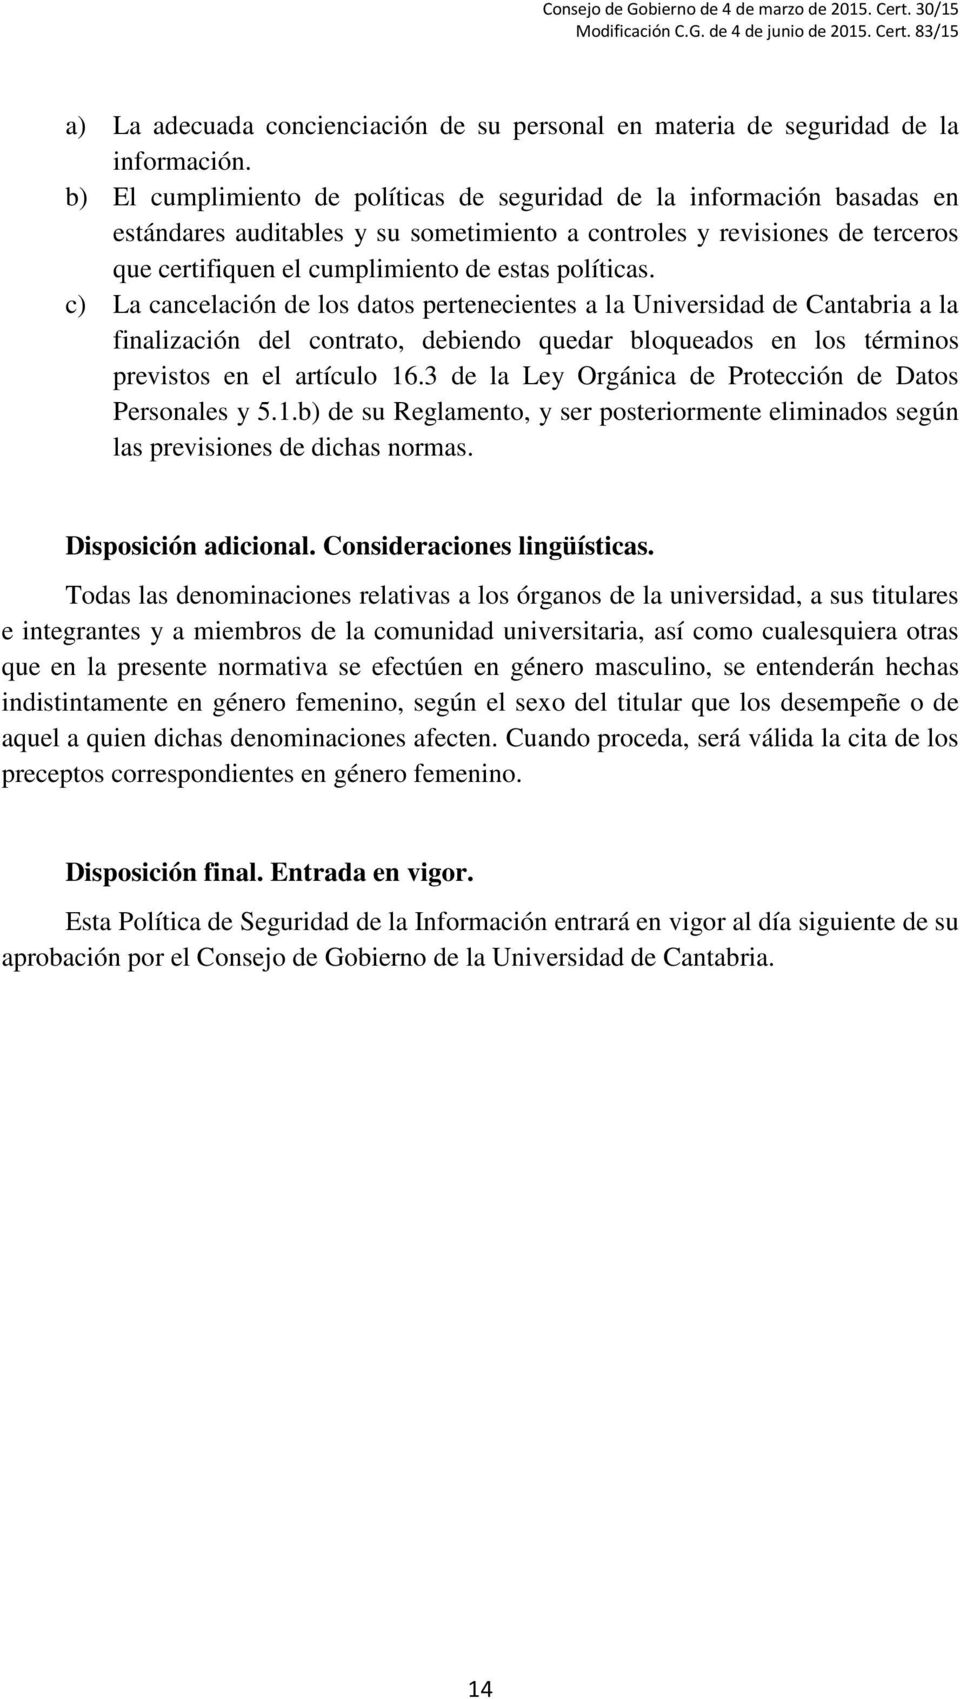 políticas. c) La cancelación de los datos pertenecientes a la Universidad de Cantabria a la finalización del contrato, debiendo quedar bloqueados en los términos previstos en el artículo 16.